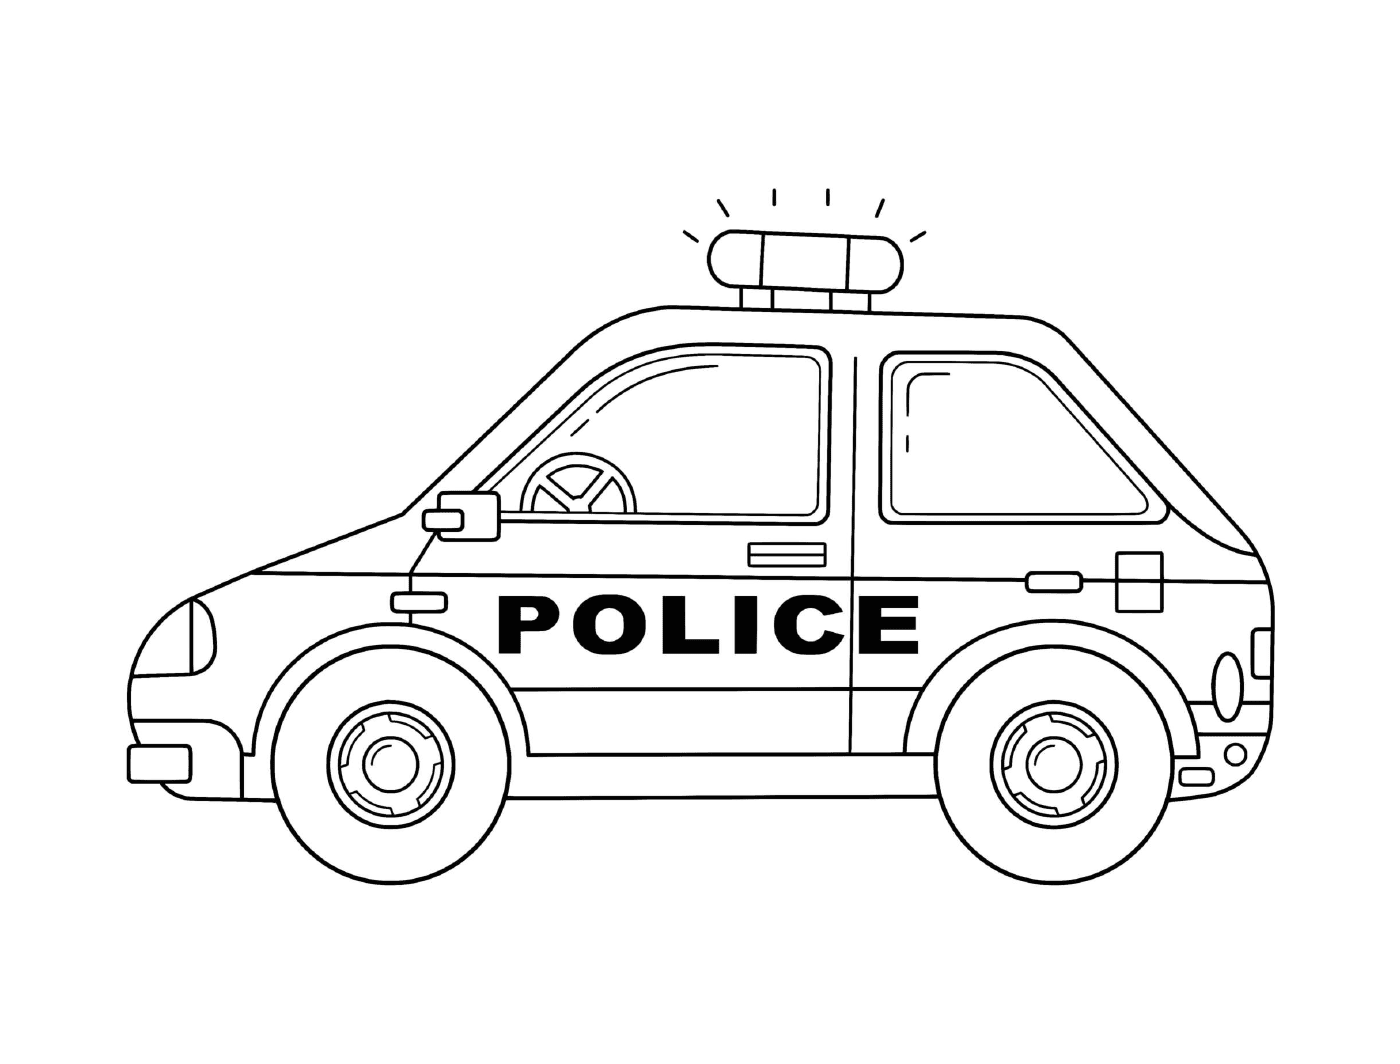  National police car in France 